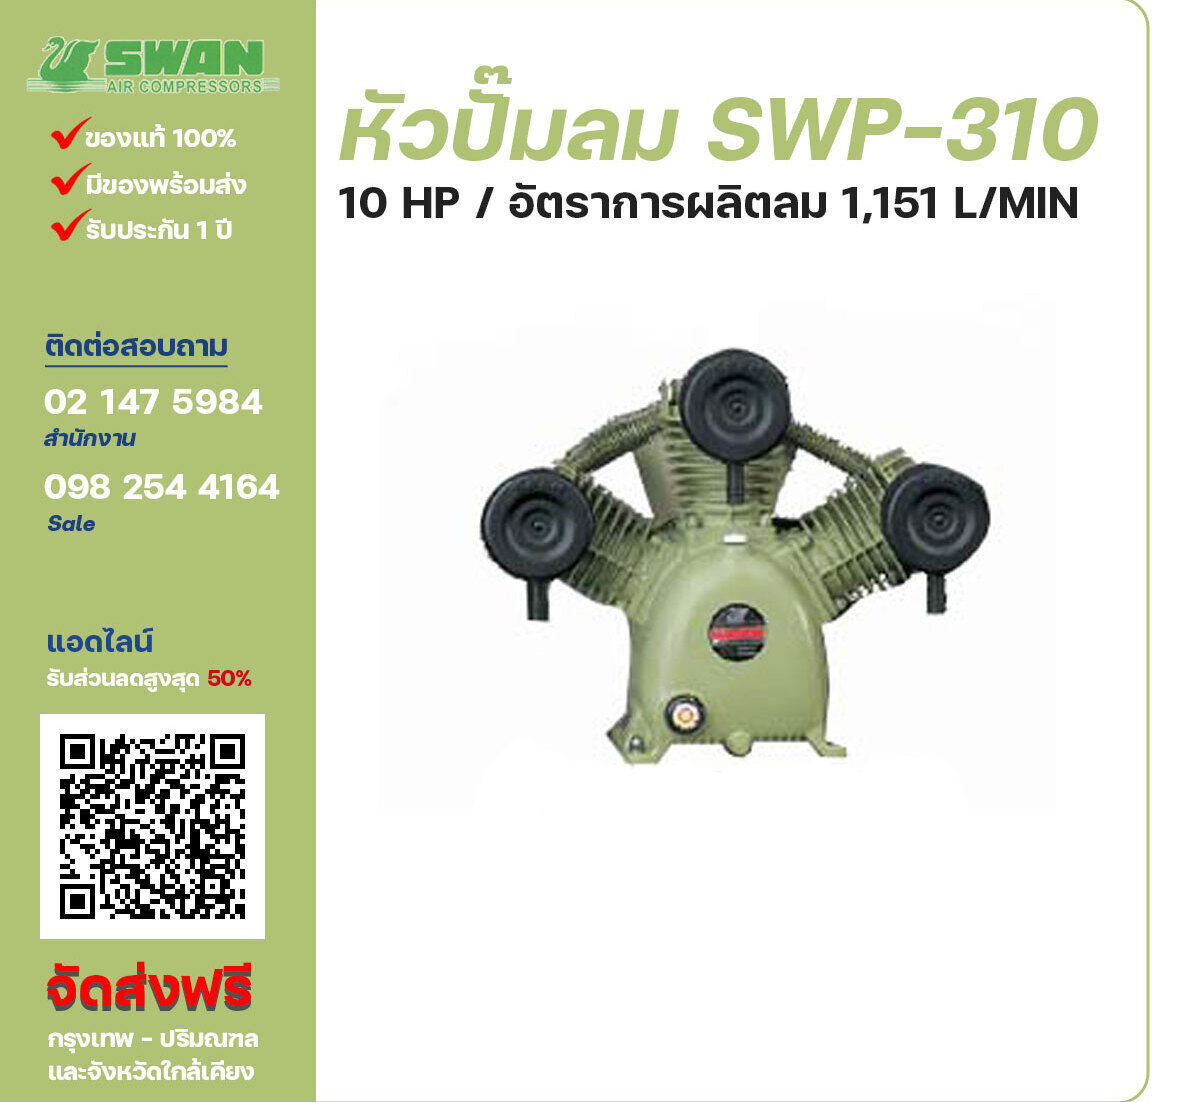 จำหน่ายหัวปั๊มลมสวอน ของแท้ 100% SWAN Bare Compressor รุ่น  SWP-310 ขนาด 10 แรงม้า อัตราการผลิตลม 1,151 ลิตร / นาที รับประกัน 3 เดือน ตามเงื่อนไขของบริษัทฯจัดส่งฟรี กรุงเทพ-ปริมณฑล